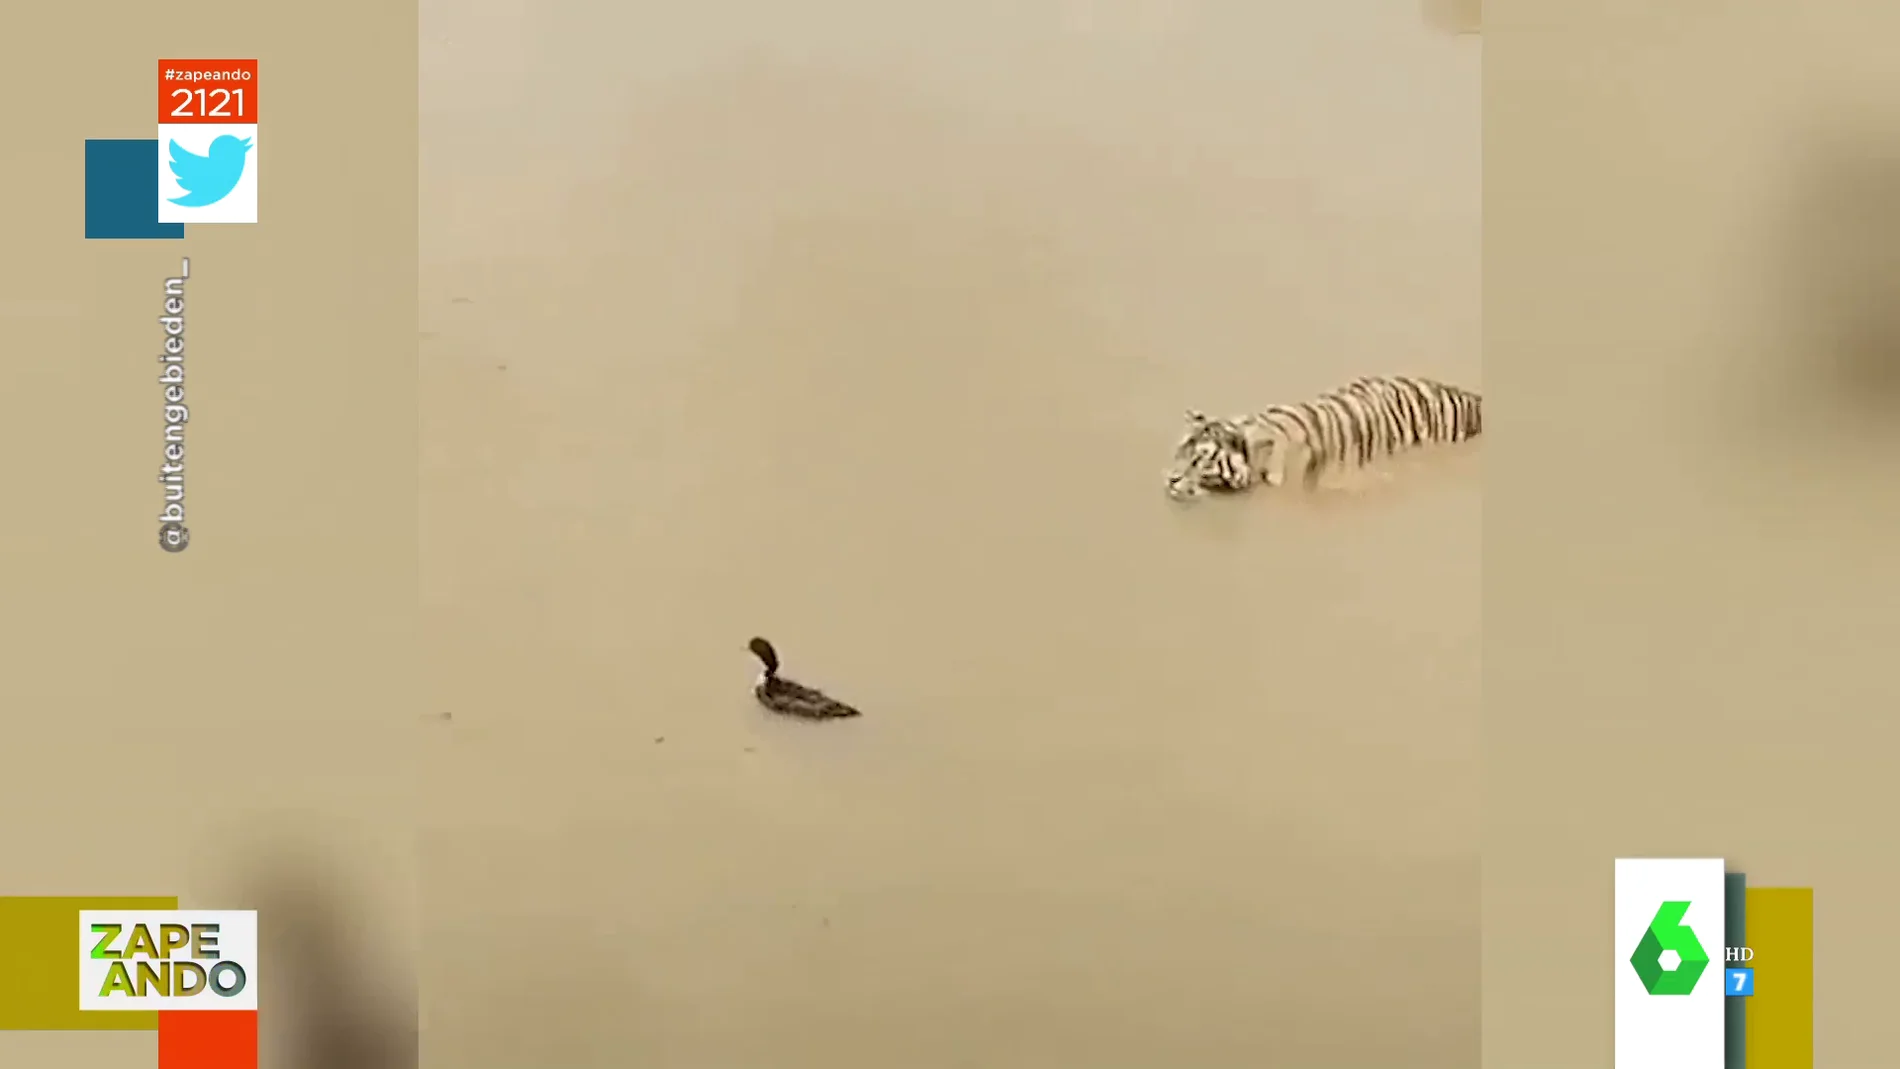 La cómica 'vacilada' de un pato a un tigre cuando intentaba cazarlo